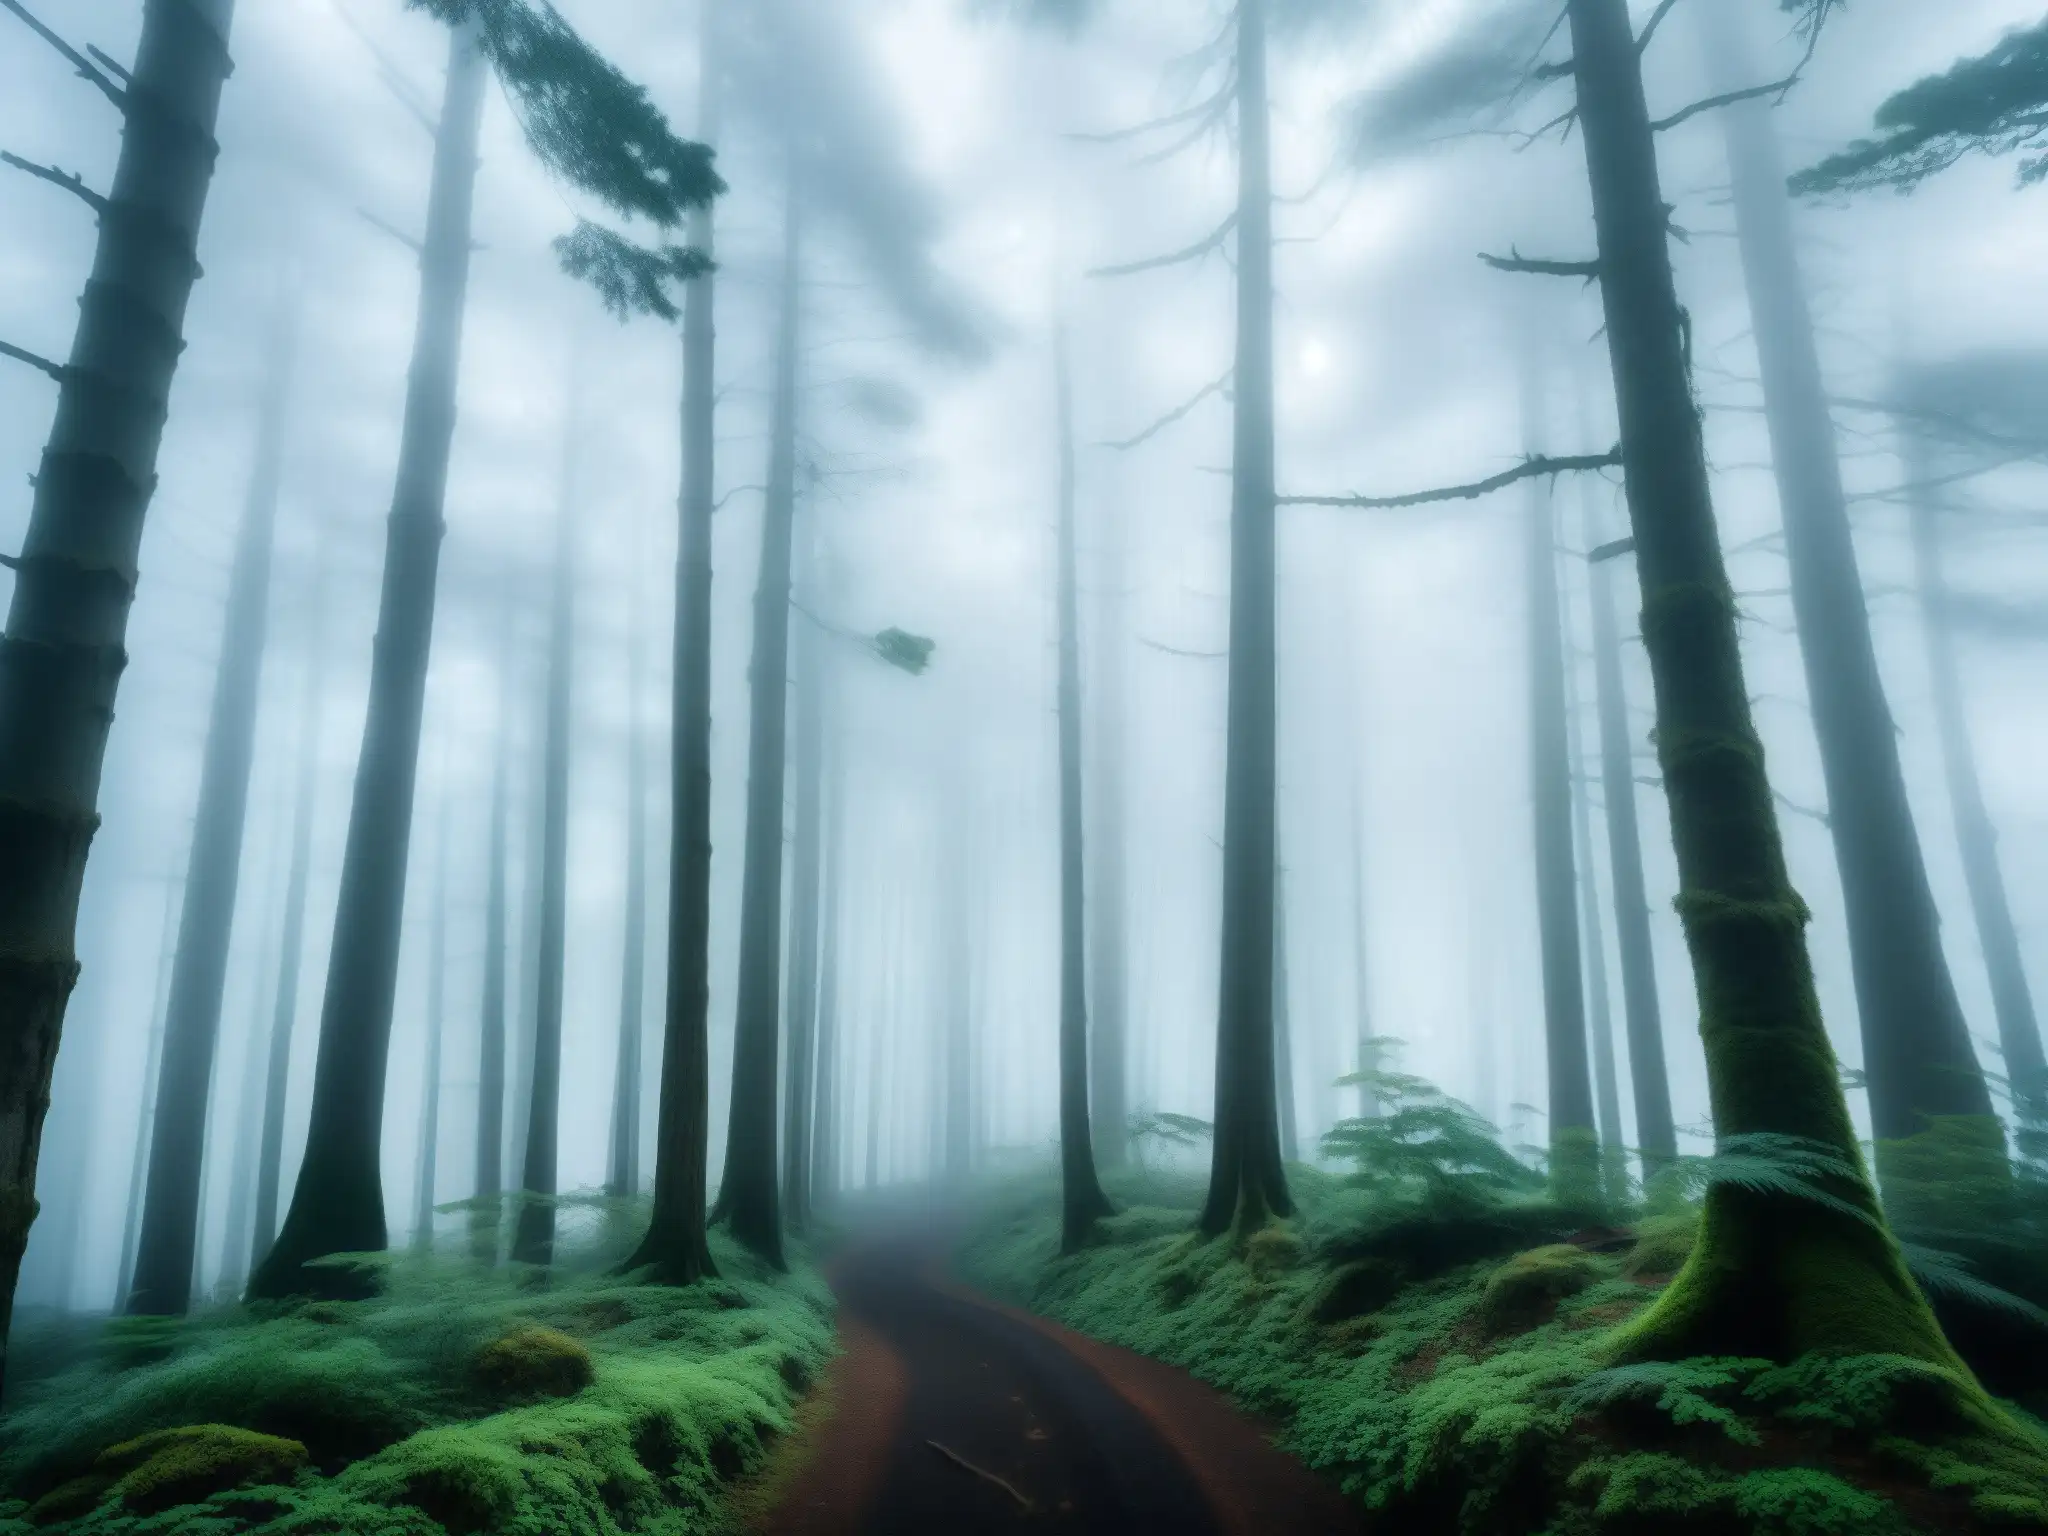 Un bosque japonés cubierto de niebla, con árboles altos y delgados que se elevan hacia el cielo